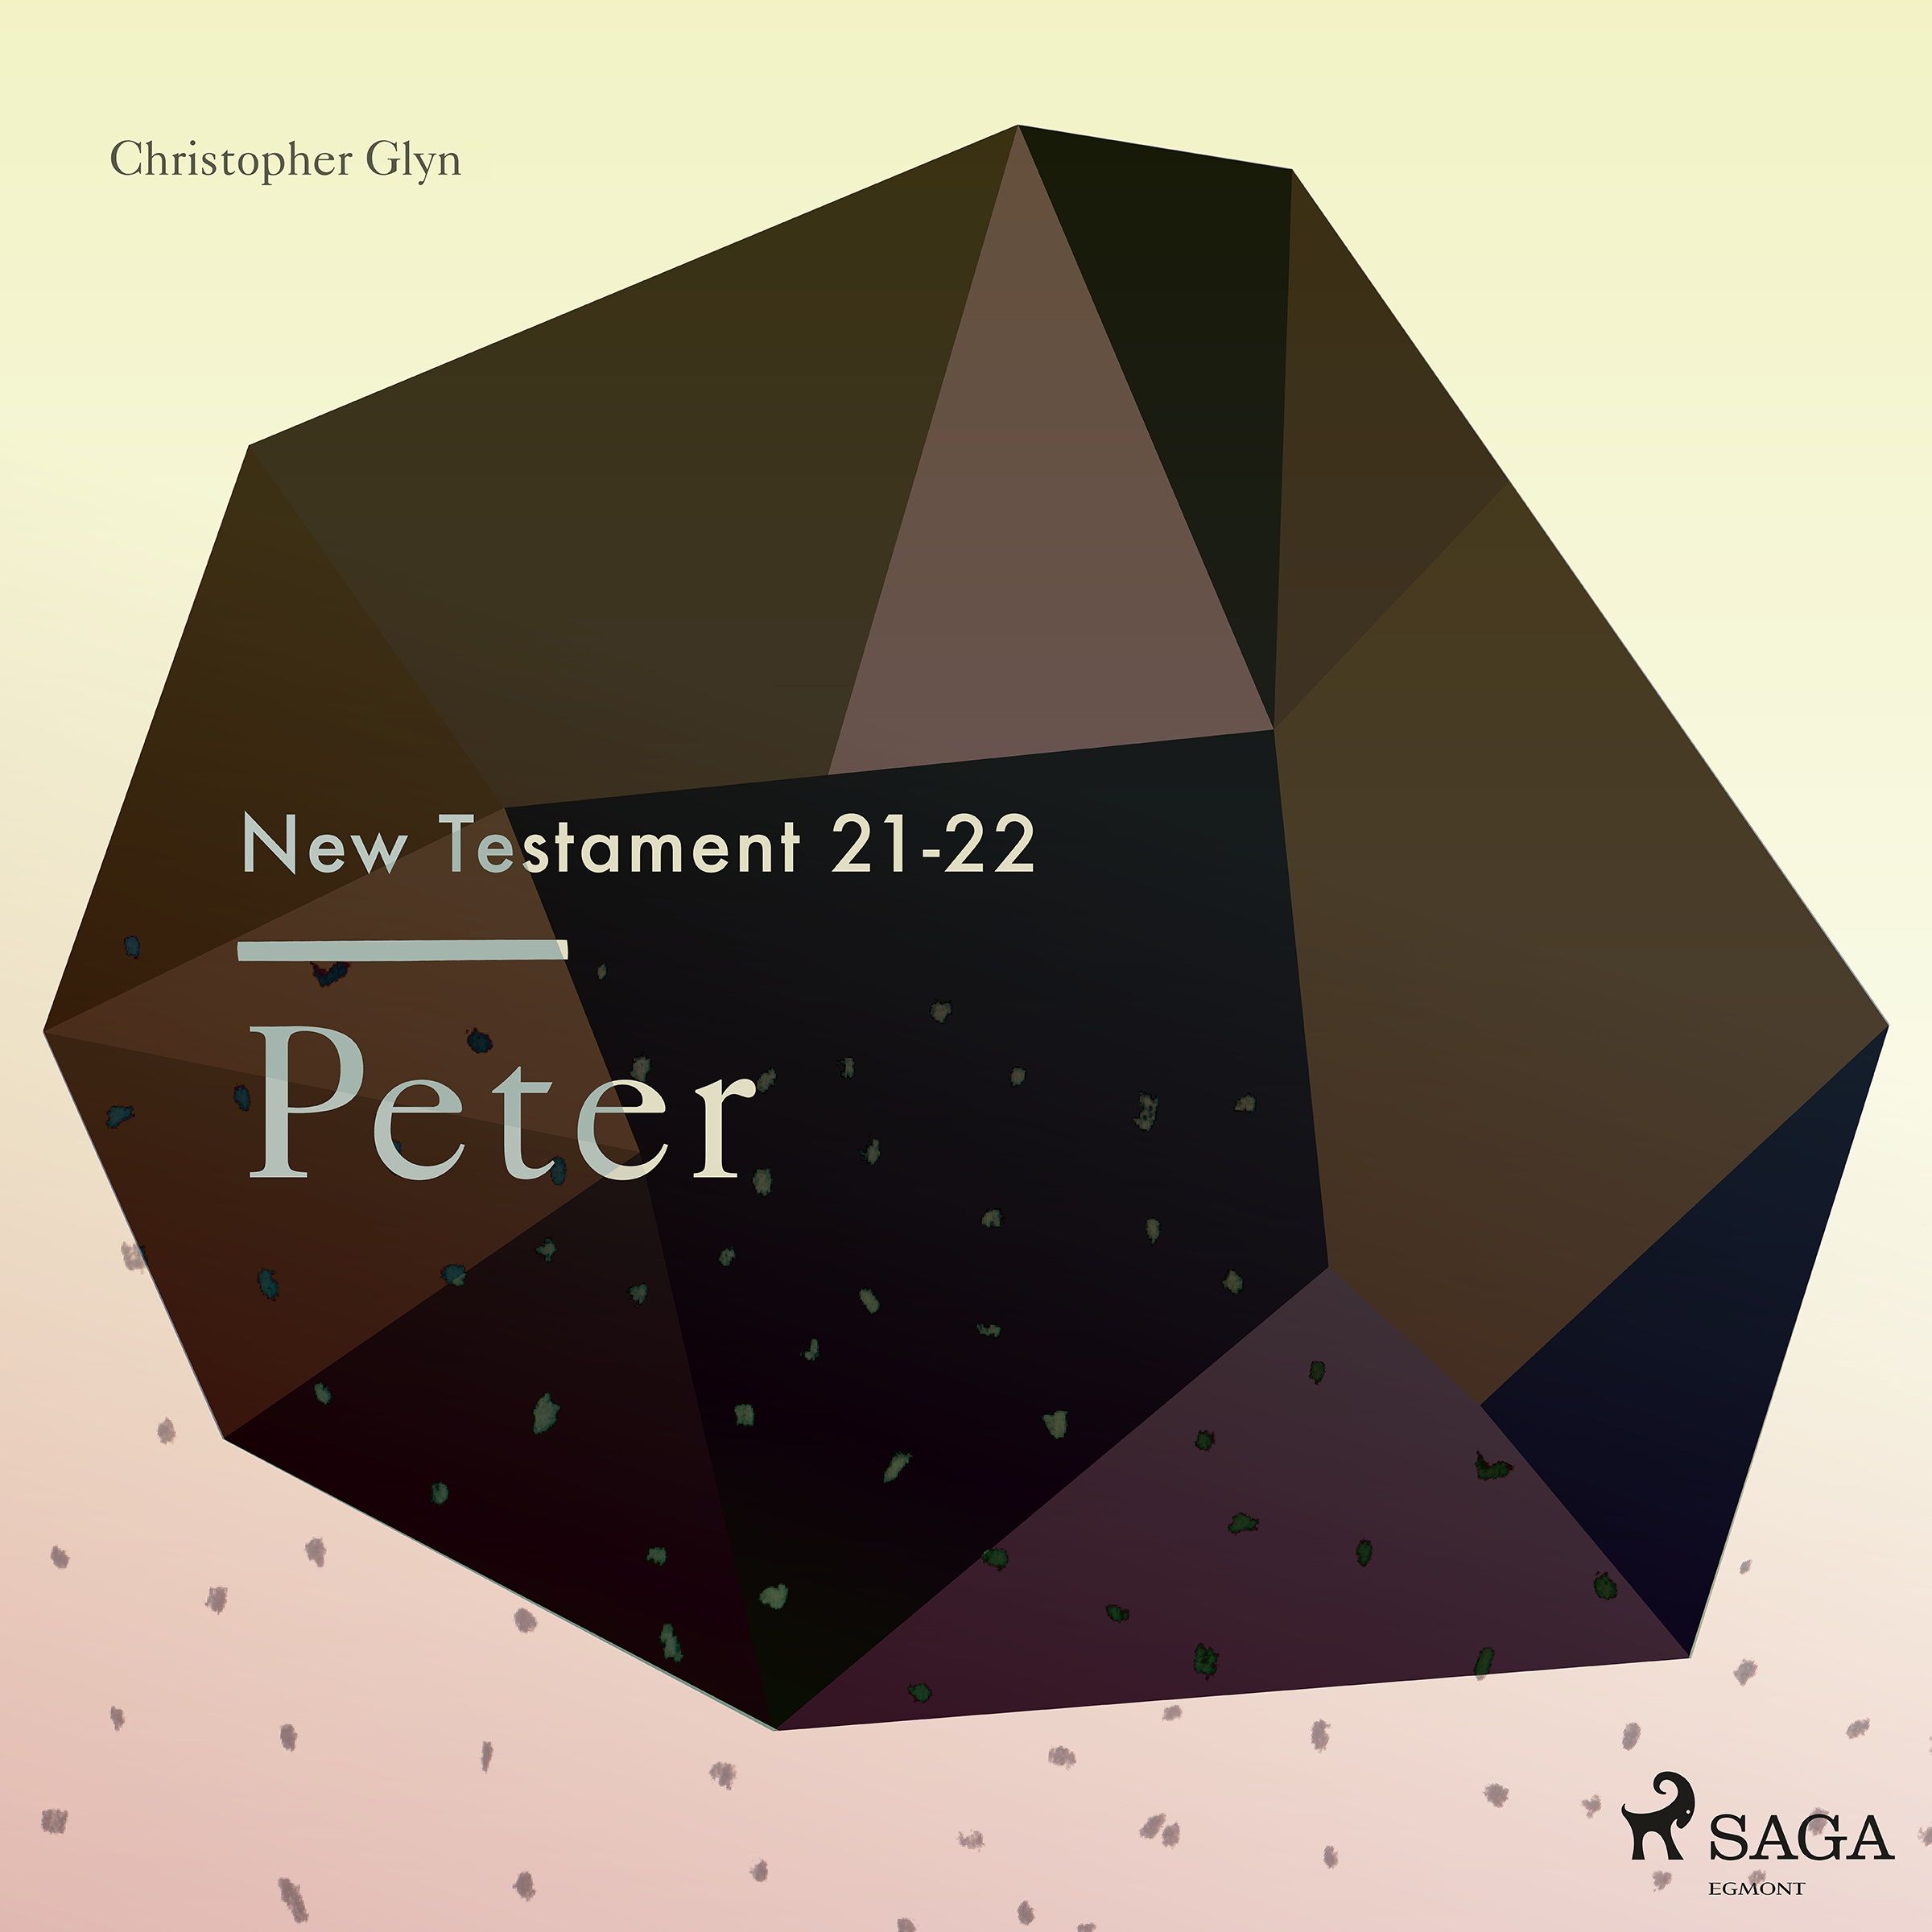 The New Testament 21-22 - Peter, lydbog af Christopher Glyn